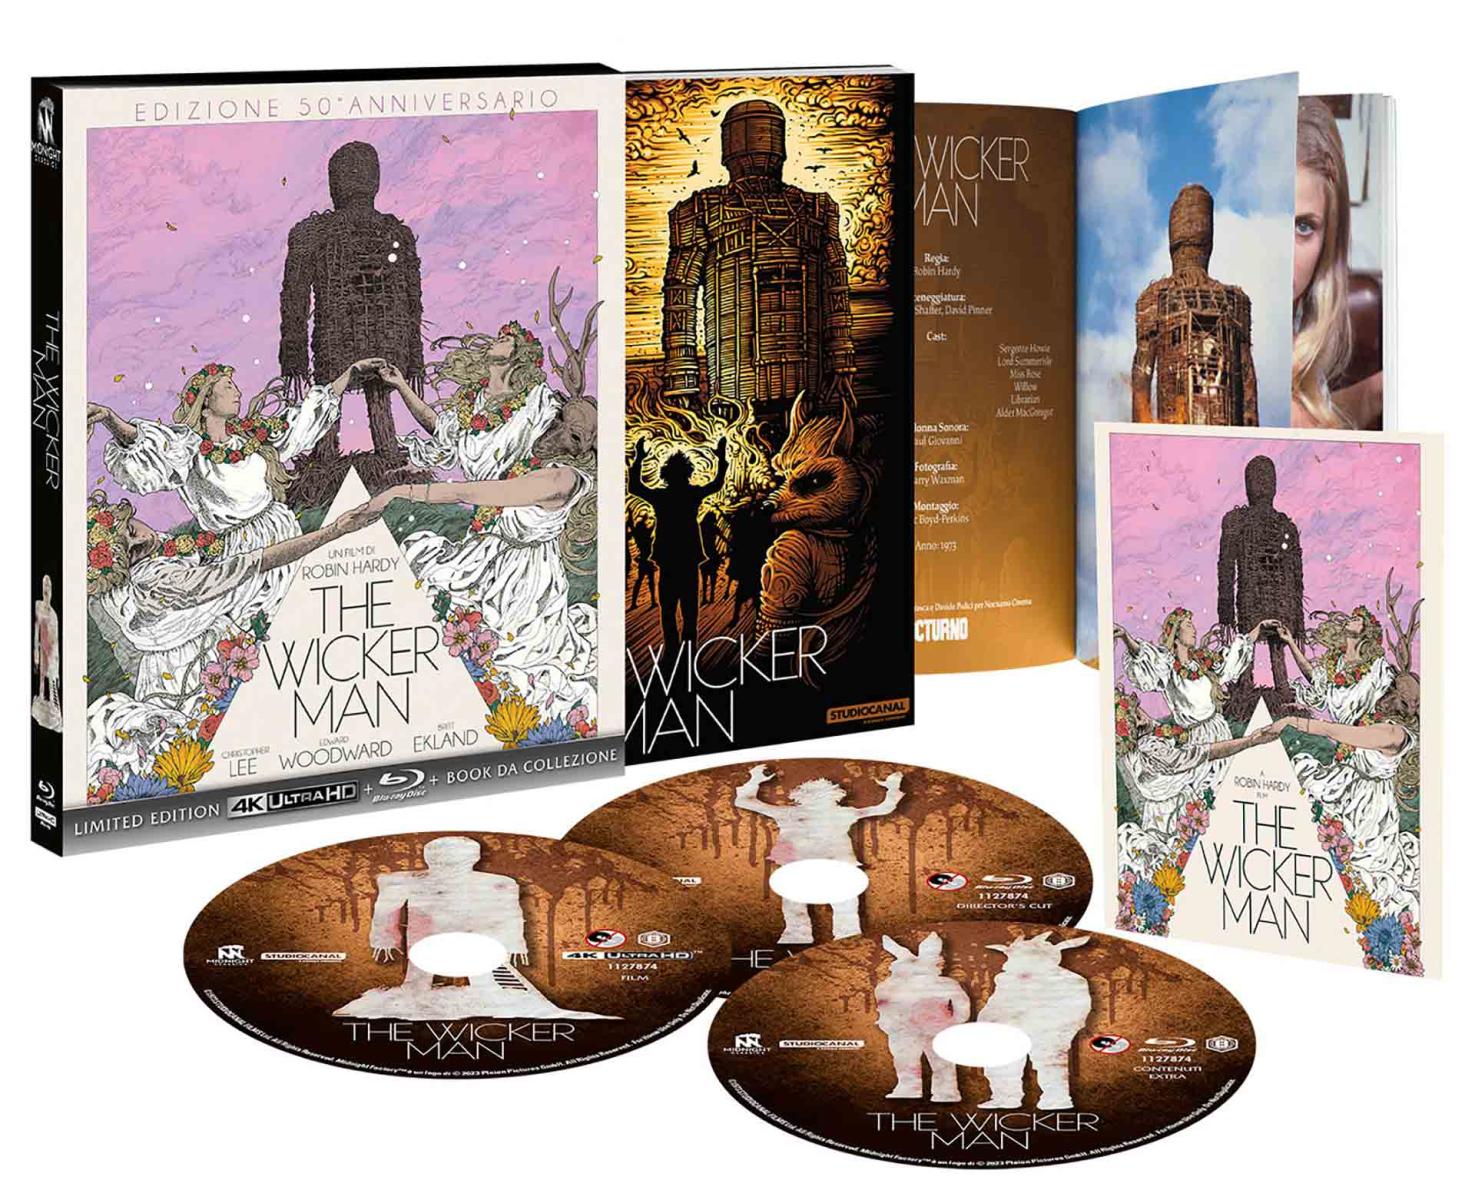 The Wicker Man - Limited Edition 4K Ultra HD + Blu-ray + Book da Collezione - Edizione 50° Anniversario (Blu-ray) Image 2